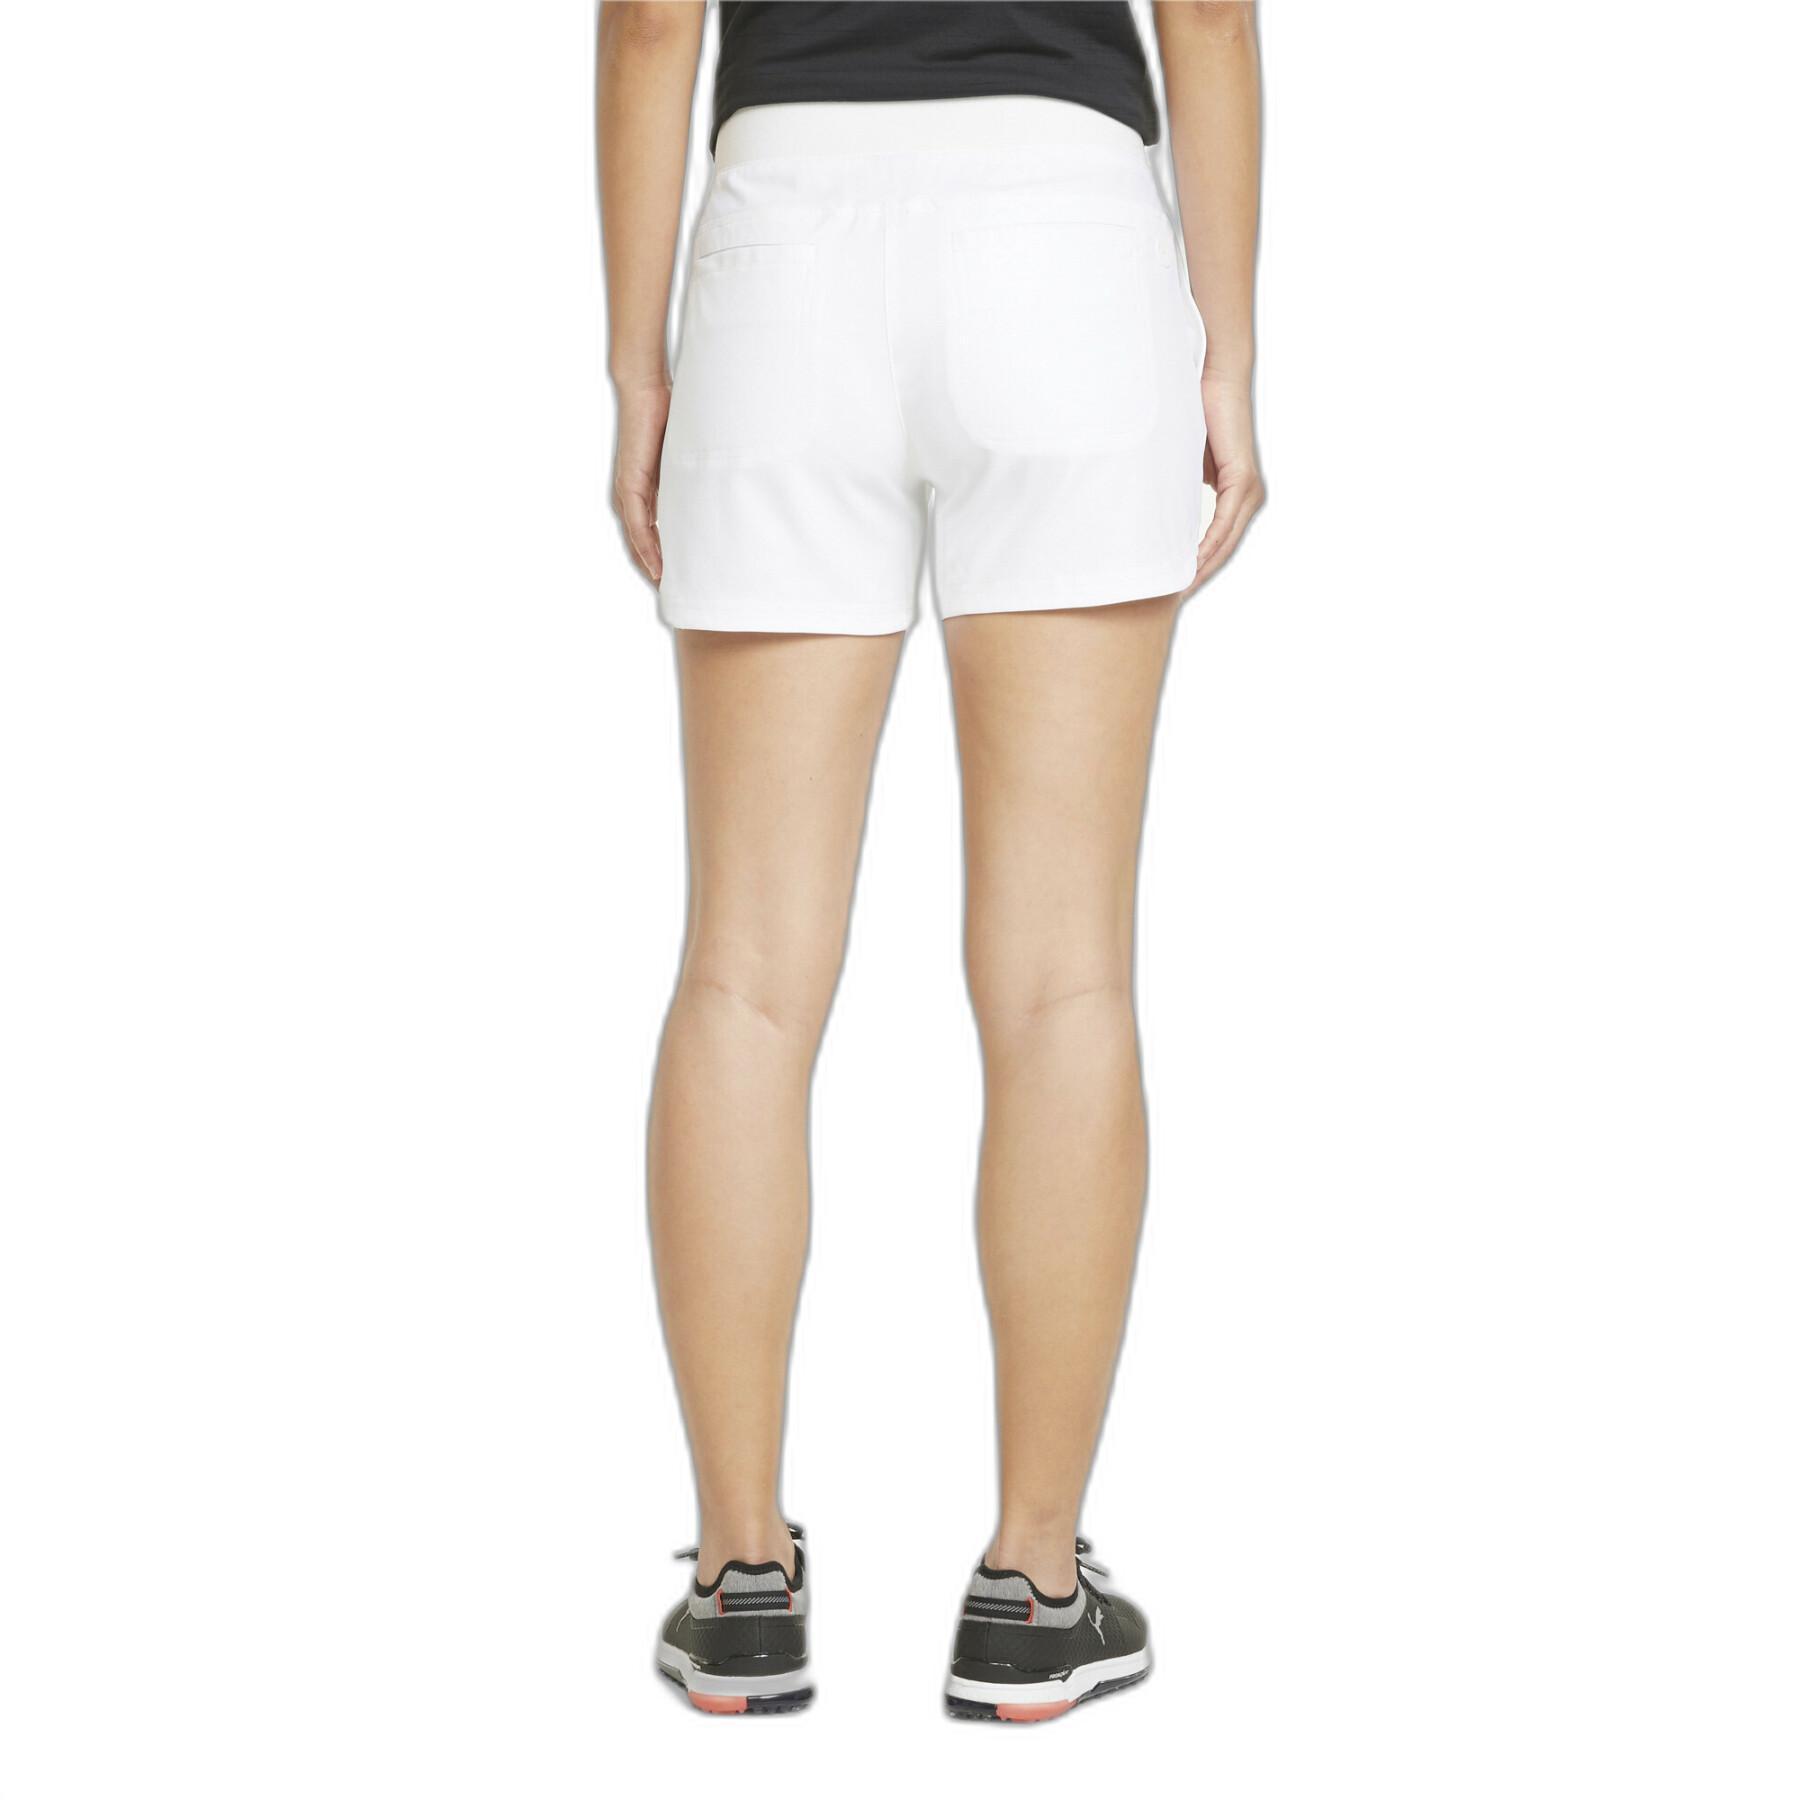 Bermuda-Shorts für Damen Puma Bahama